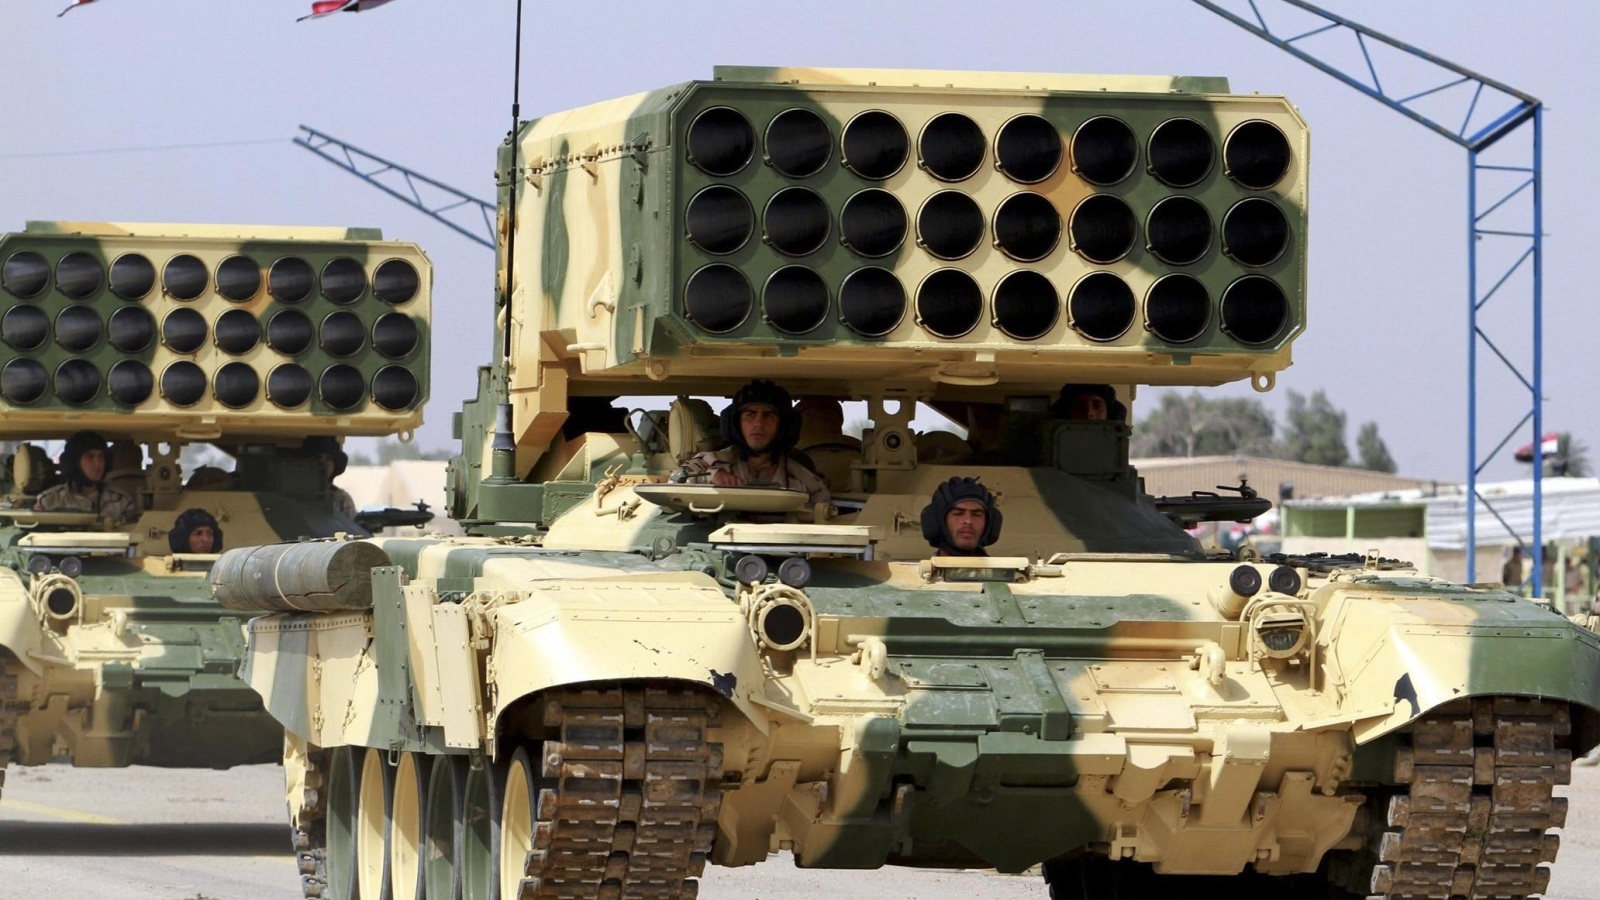 ‪قاذفات صواريخ روسية لدى الجيش العراقي‬  قاذفات صواريخ روسية لدى الجيش العراقي (رويترز)